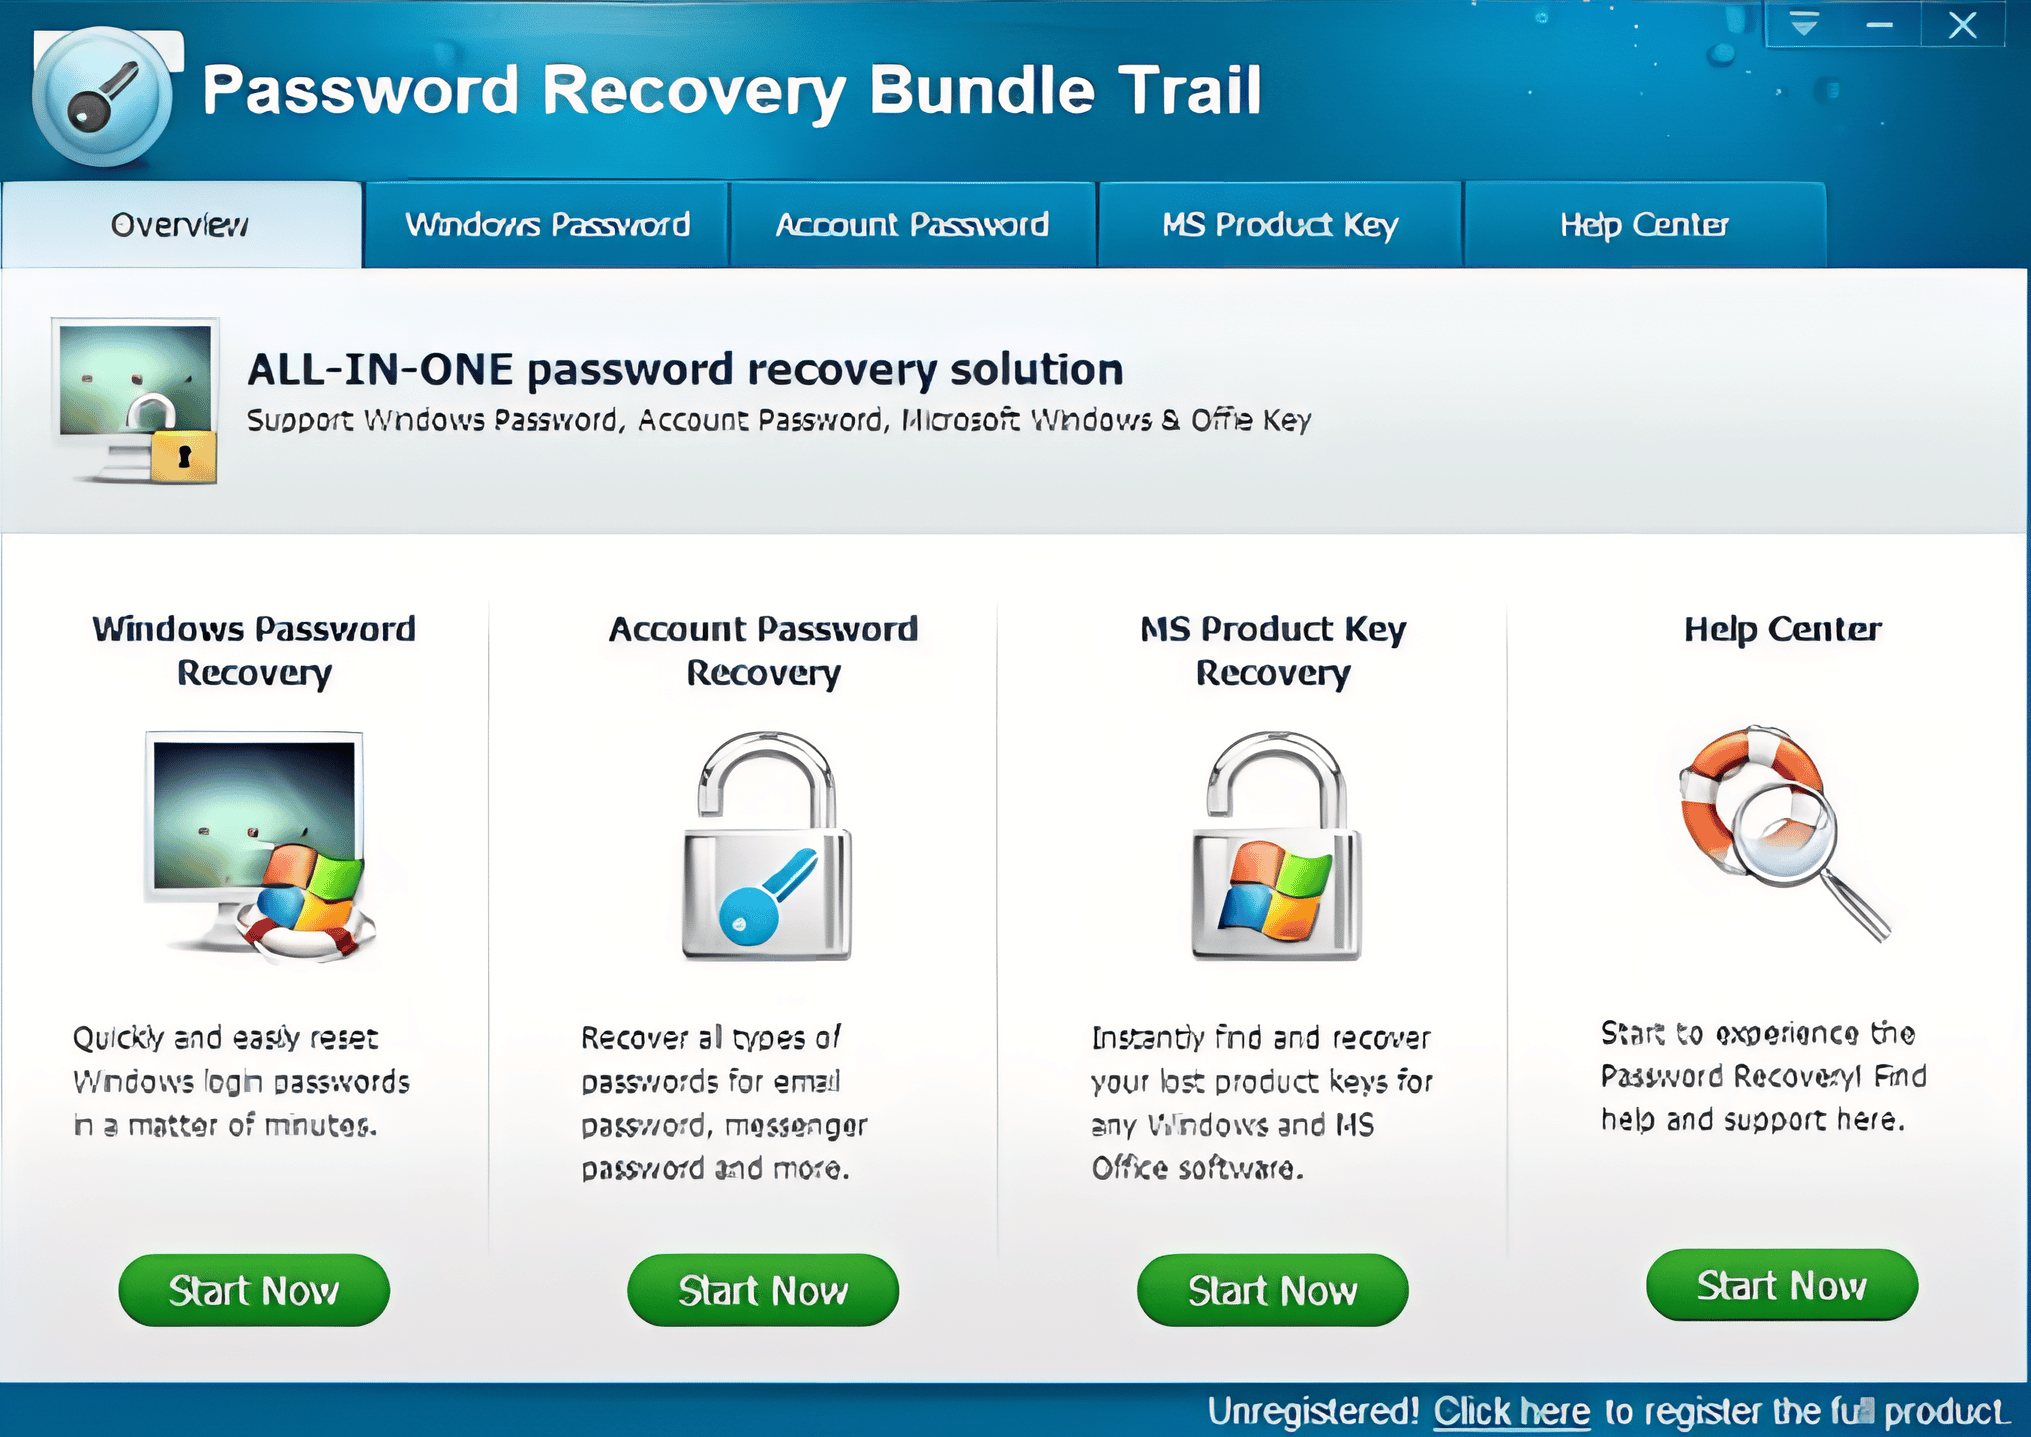 Recover восстановление пароля. Password Recovery. Password Recovery Bundle. Windows password Recovery. 1password для Windows русская версия.